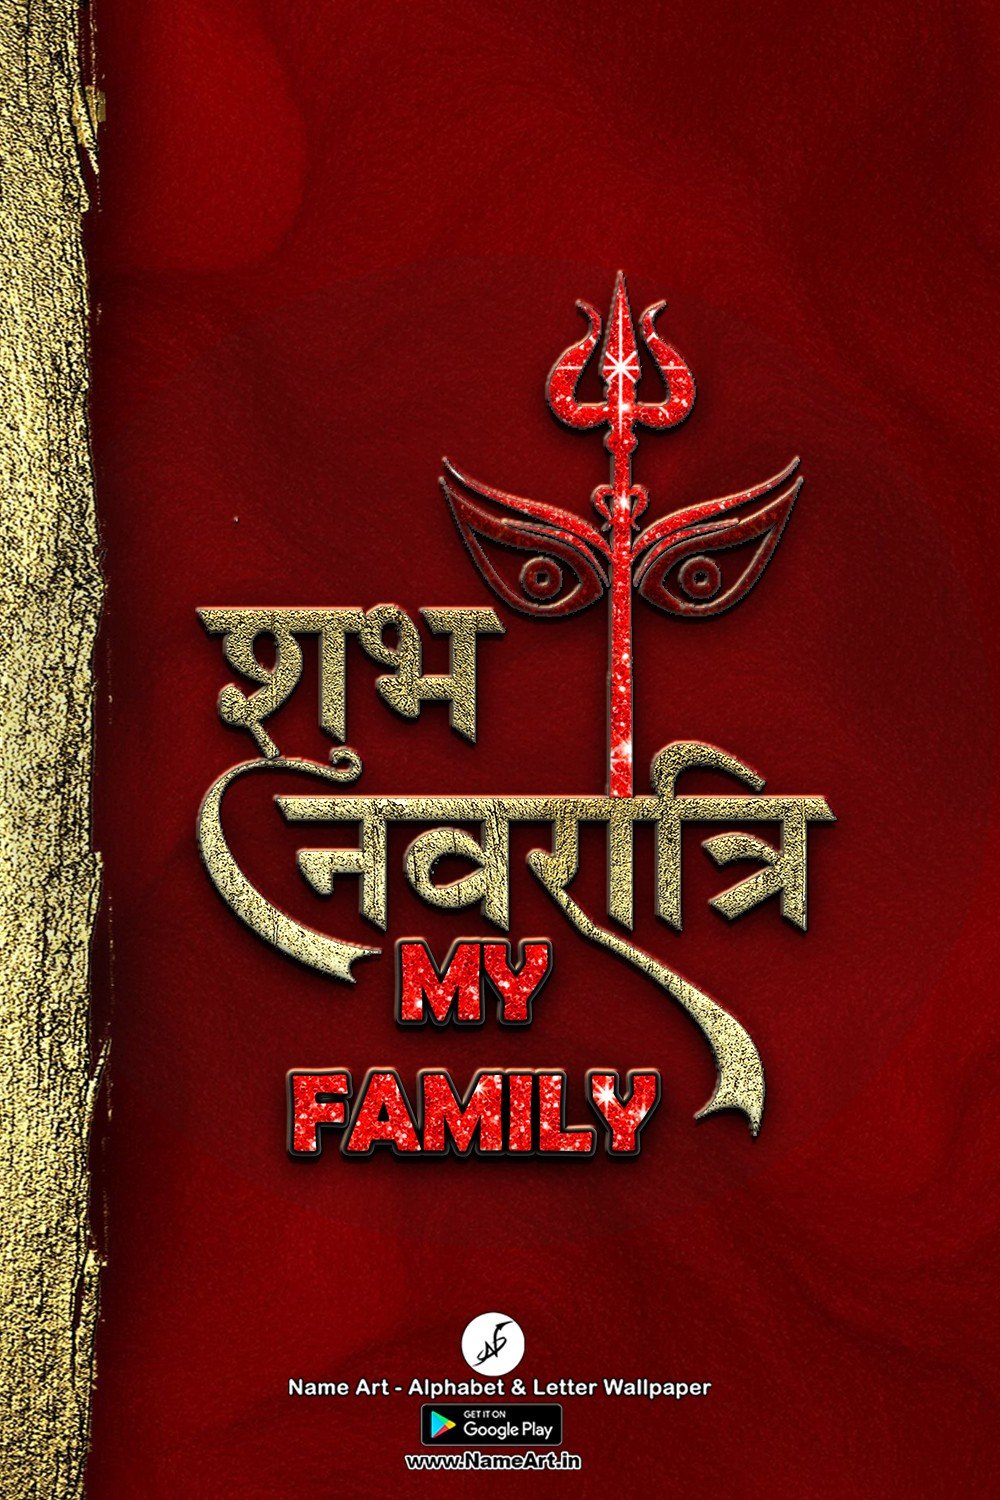 My family Navratri Status | Whatsapp Status My family Navratri Status |  My family Navratri Status !! | New Whatsapp Status My family Navratri Status Images |